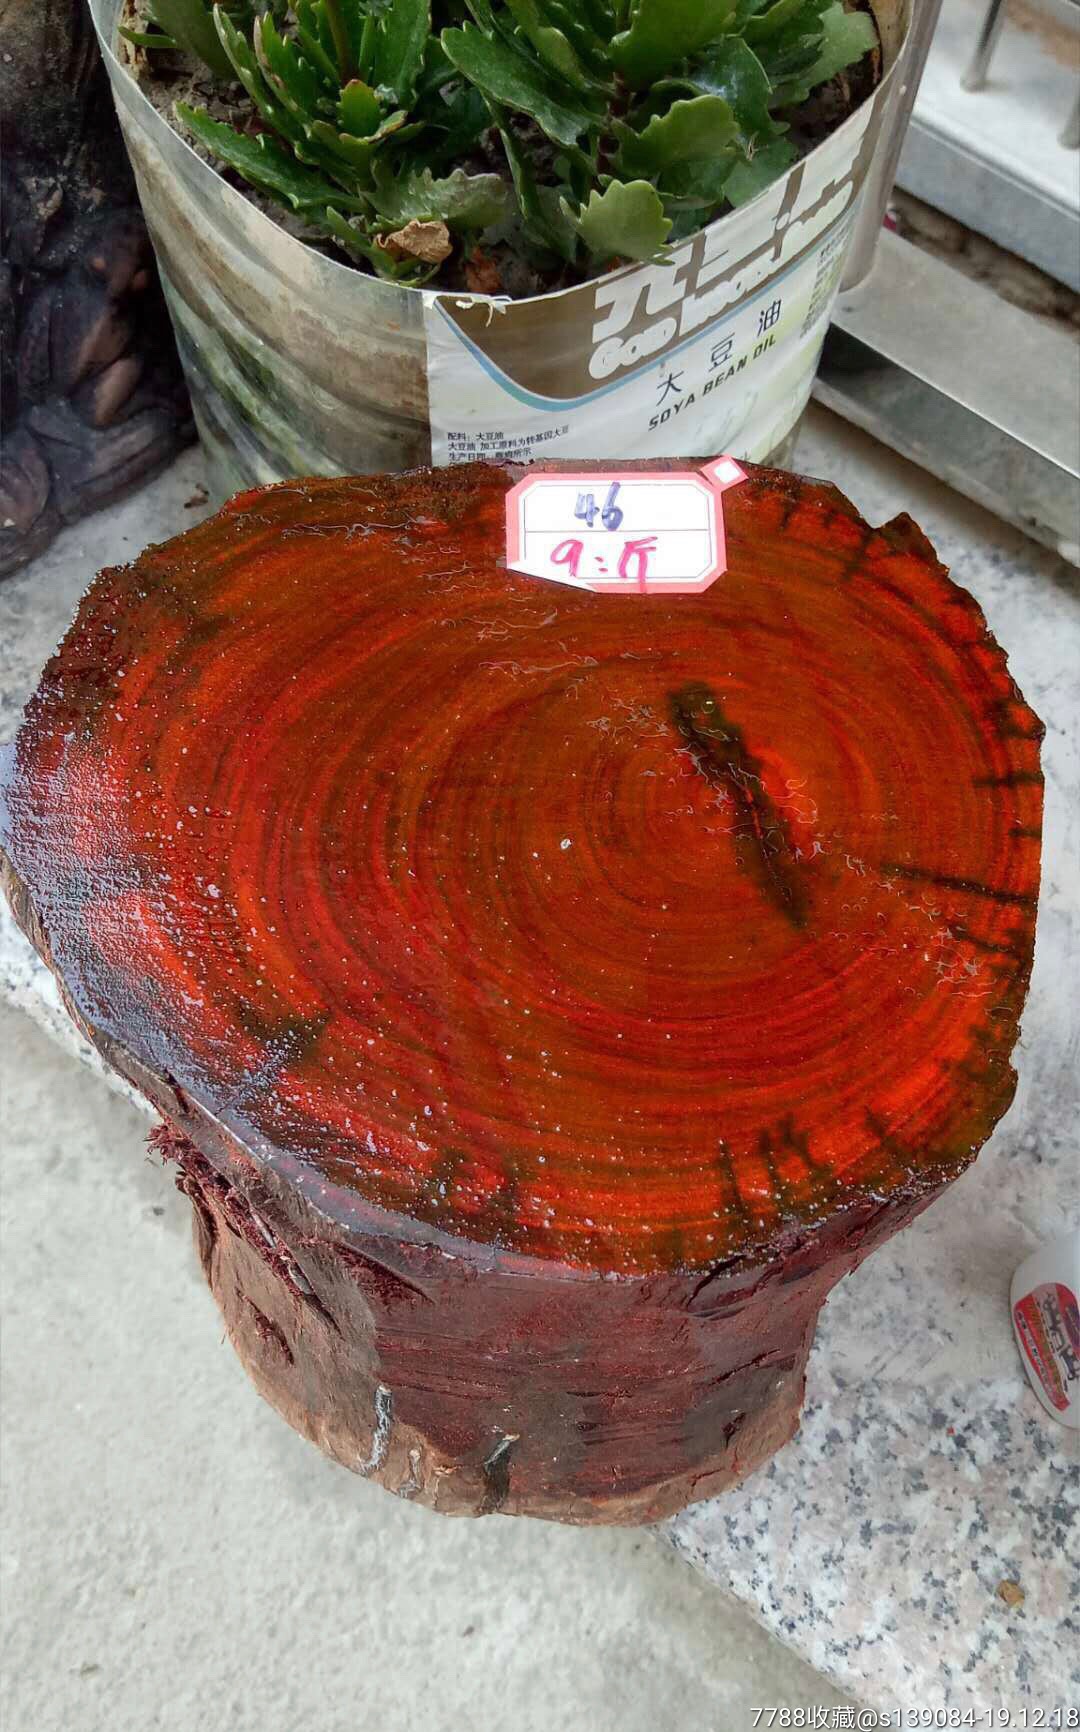 小叶紫檀大木头,9斤多,包真